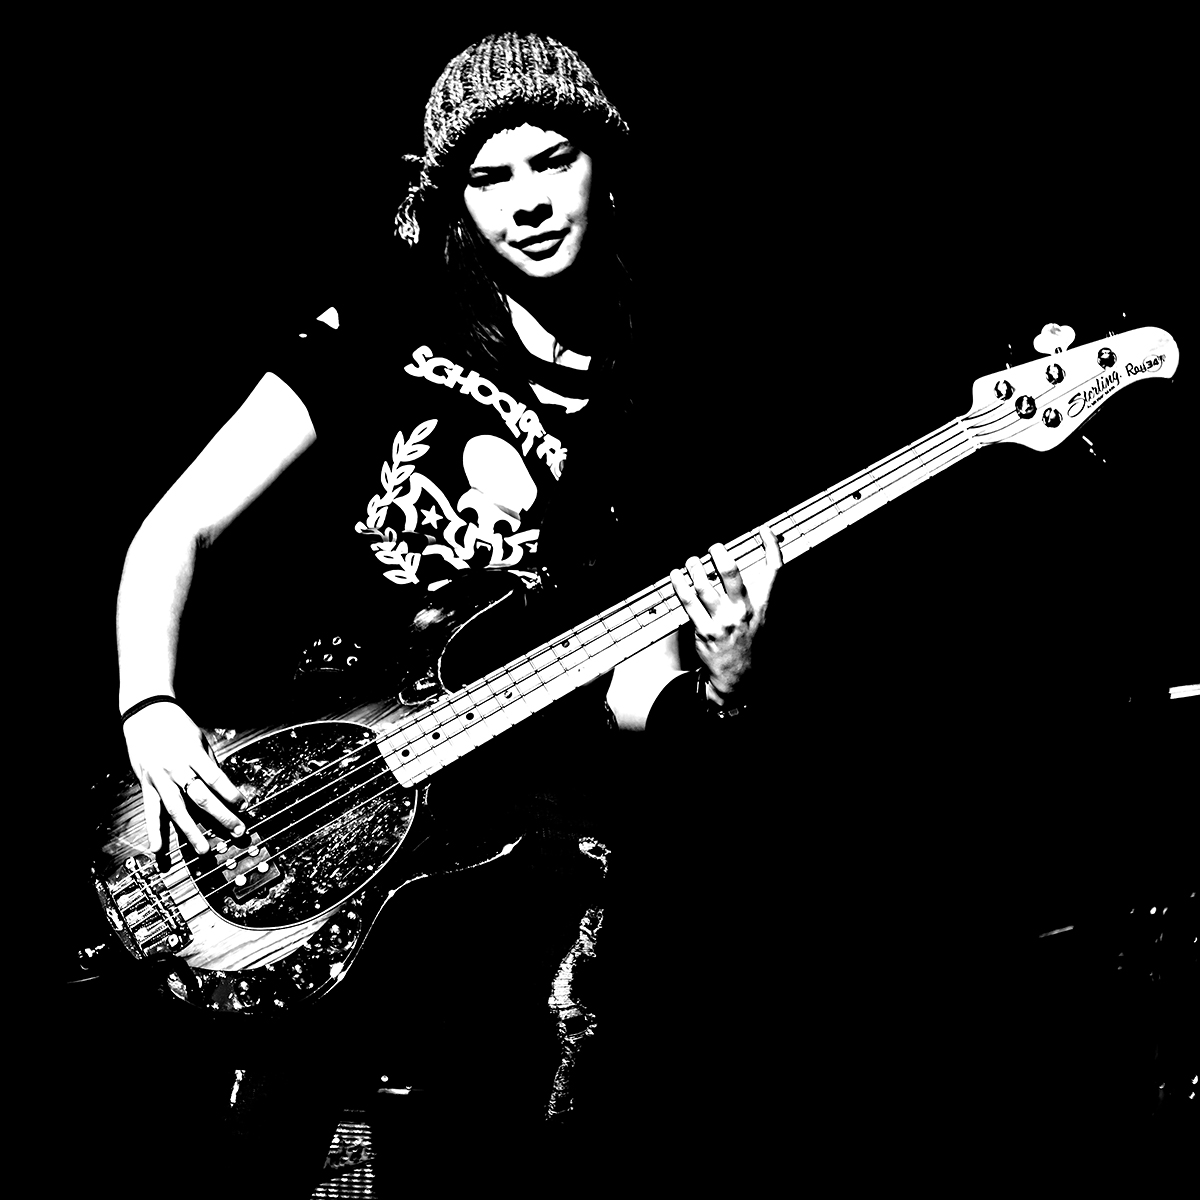 Kat the bass player